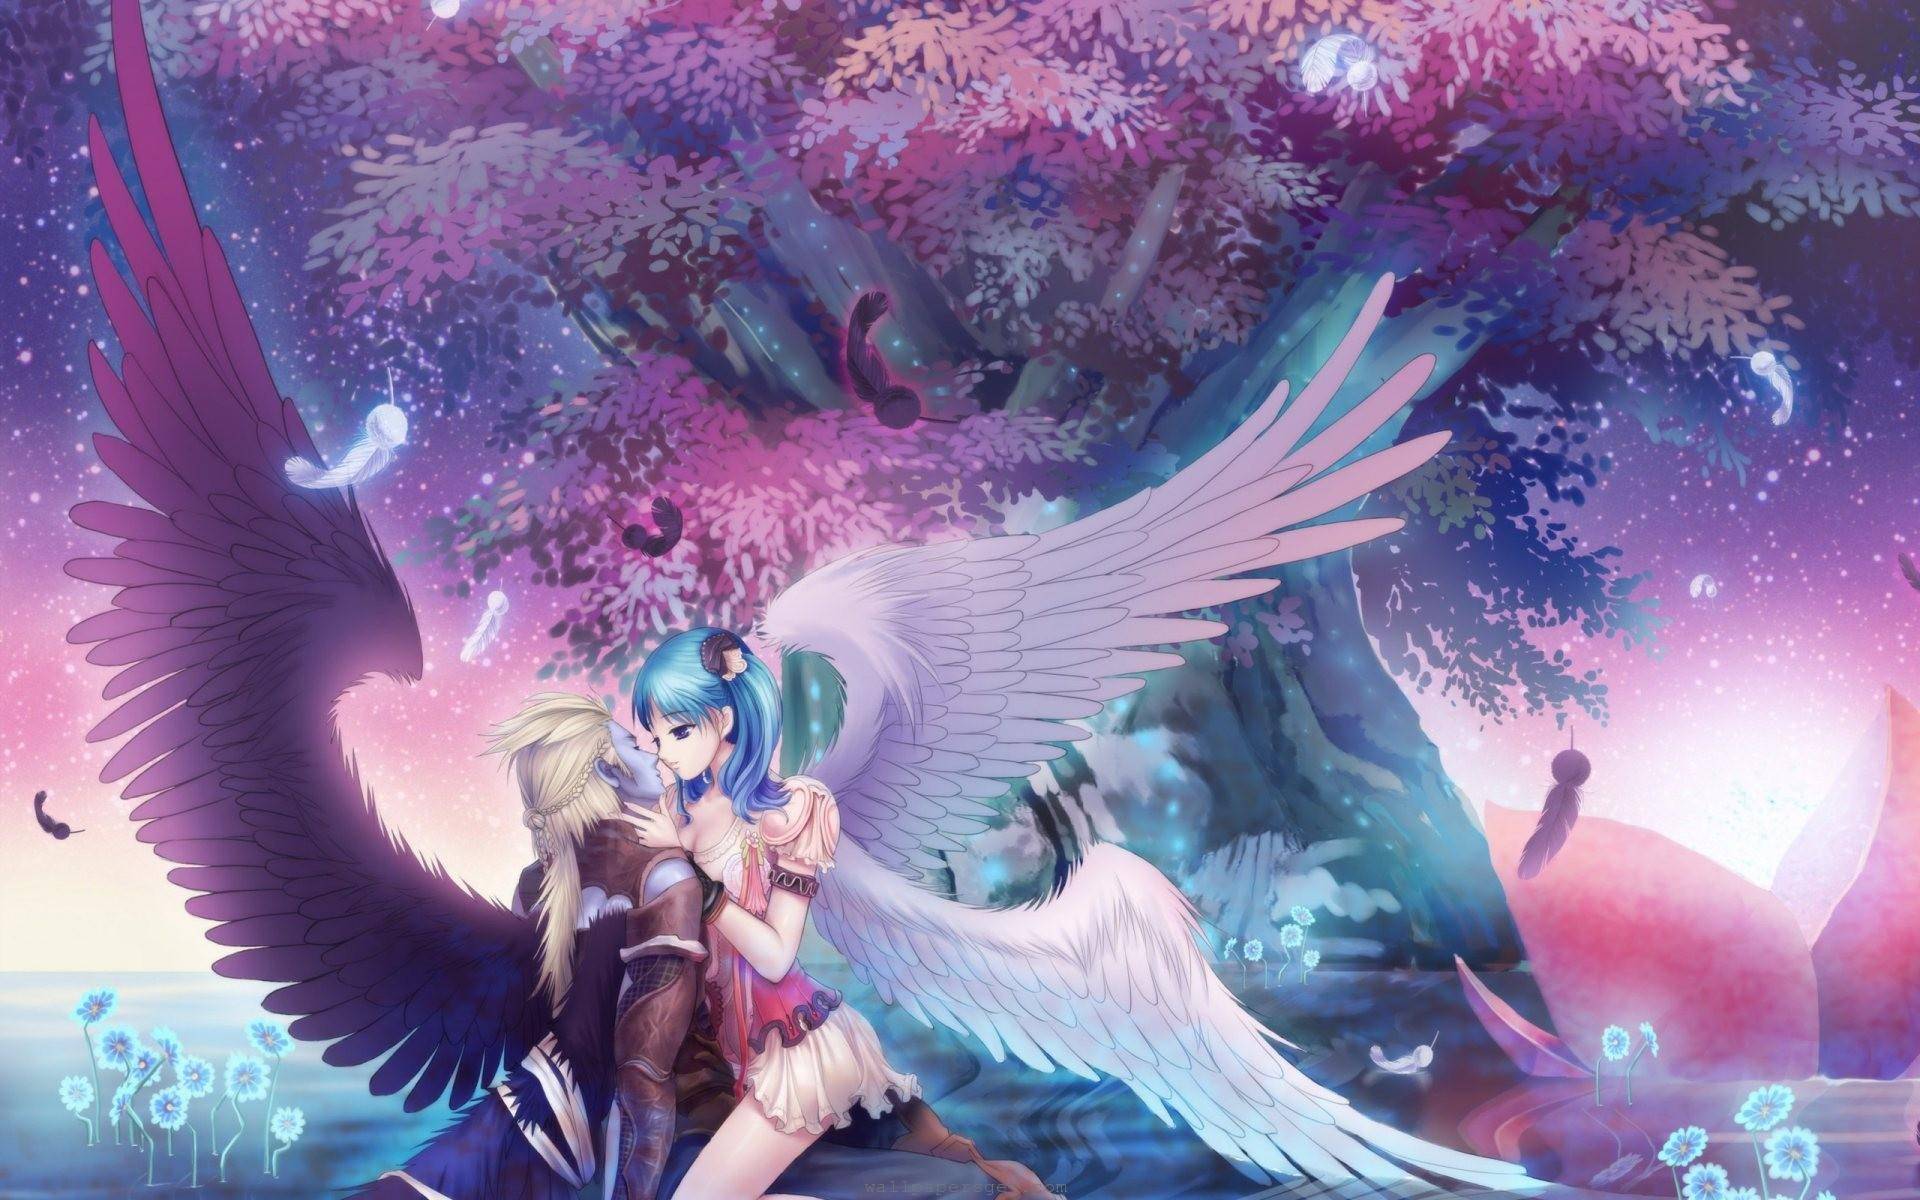 Beautiful angel romance   Anime Manga Wallpaper